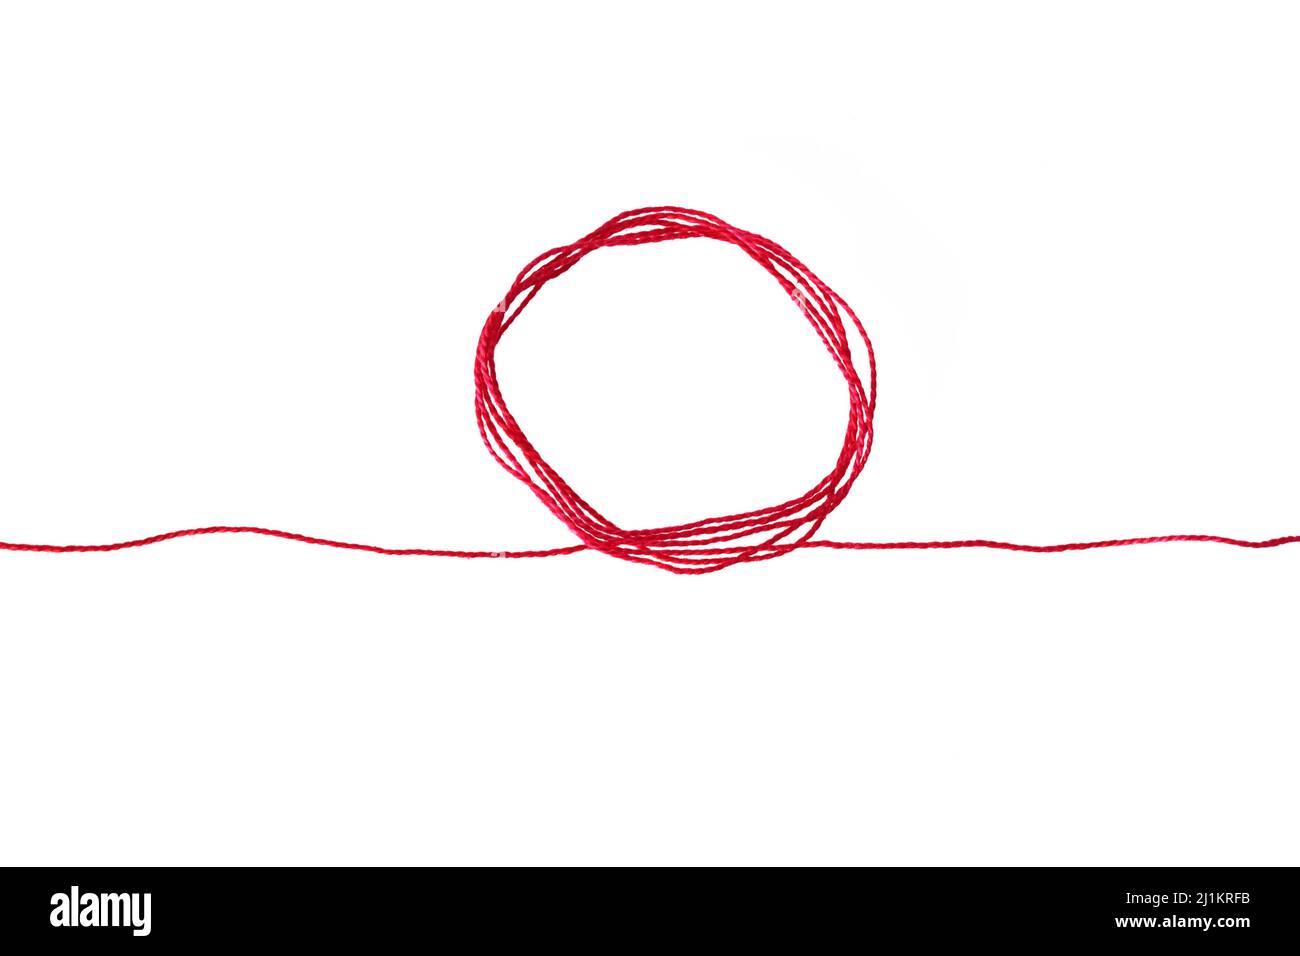 Ein roter Seidenfaden, kreisförmig geloopt, der sich an beiden Enden erstreckt und den roten Faden des Schicksals in der chinesischen Tradition symbolisiert, auf einem rein weißen Hintergrund Stockfoto